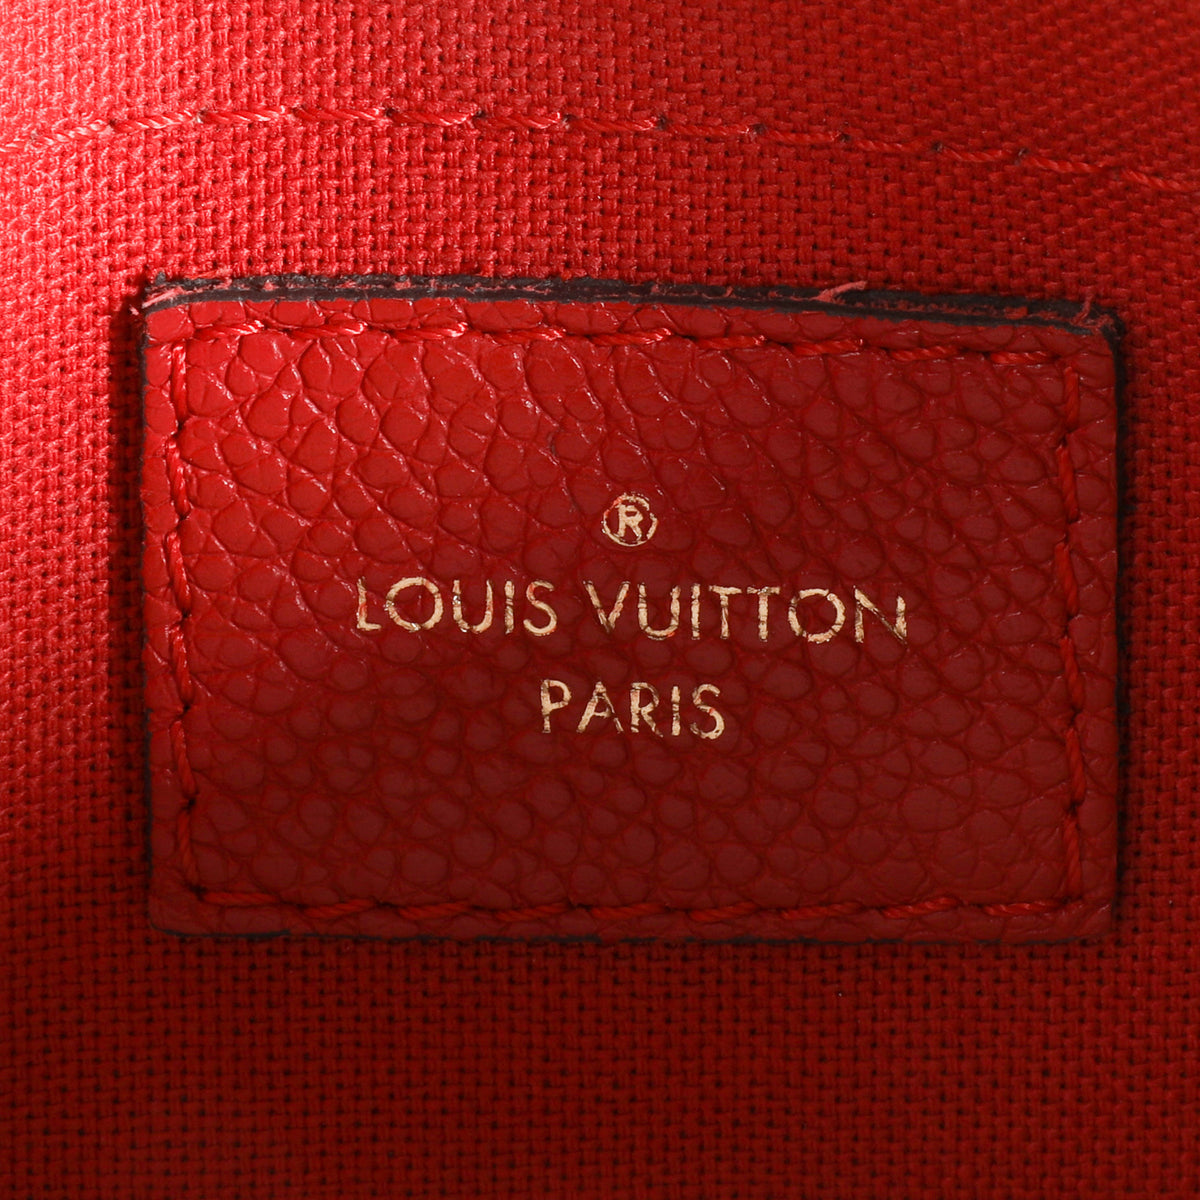 Louis Vuitton Monogram Canvas & Cerise Pallas Clutch